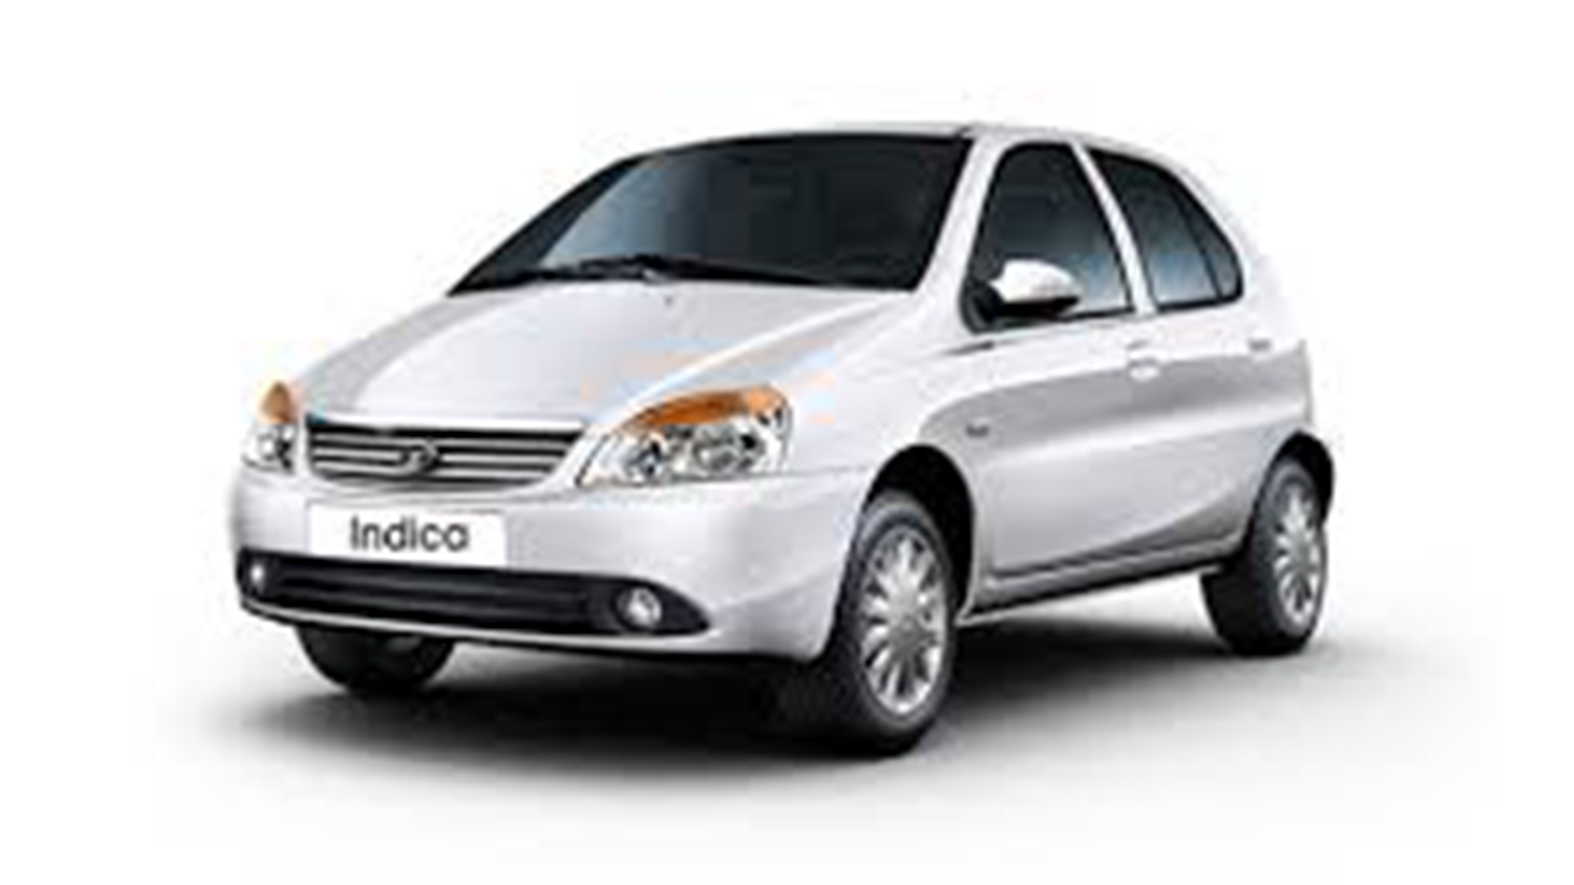 Tata Indica 1.4 L Diesel 2014 Exterior 001